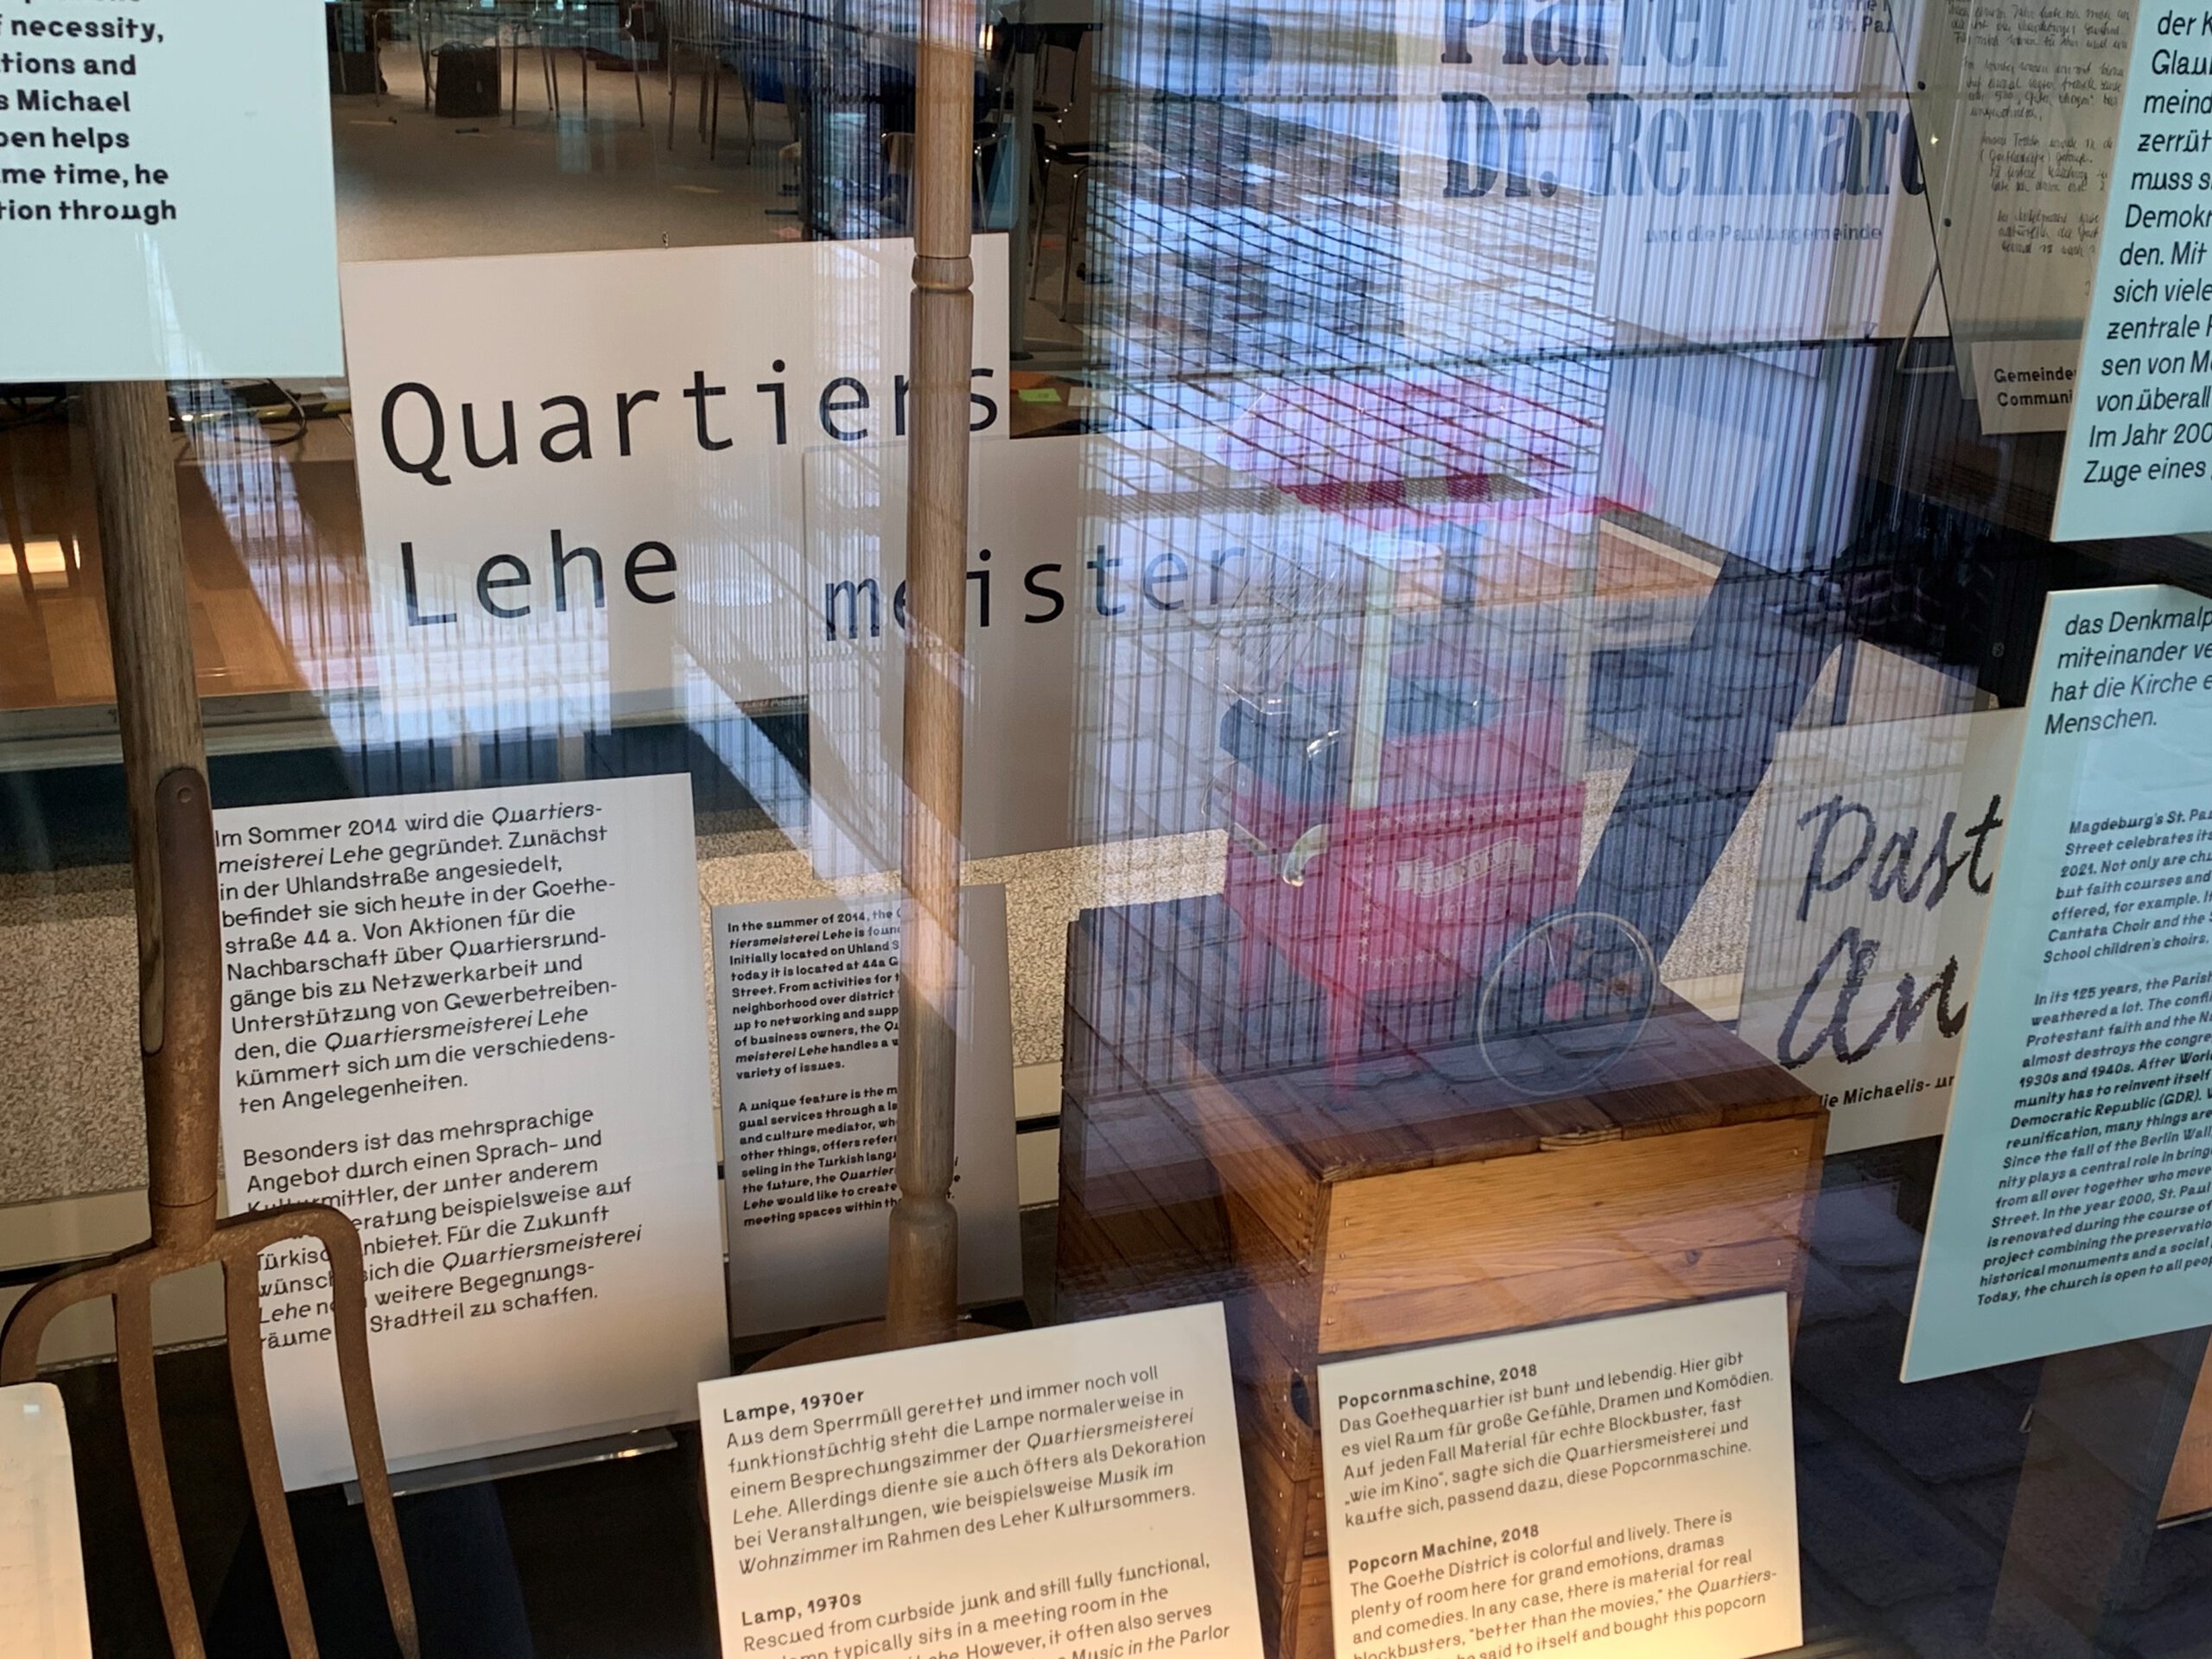 Verschiedene Infotexte der Ausstellung, sowie begleitende hinter einem Schaufenster